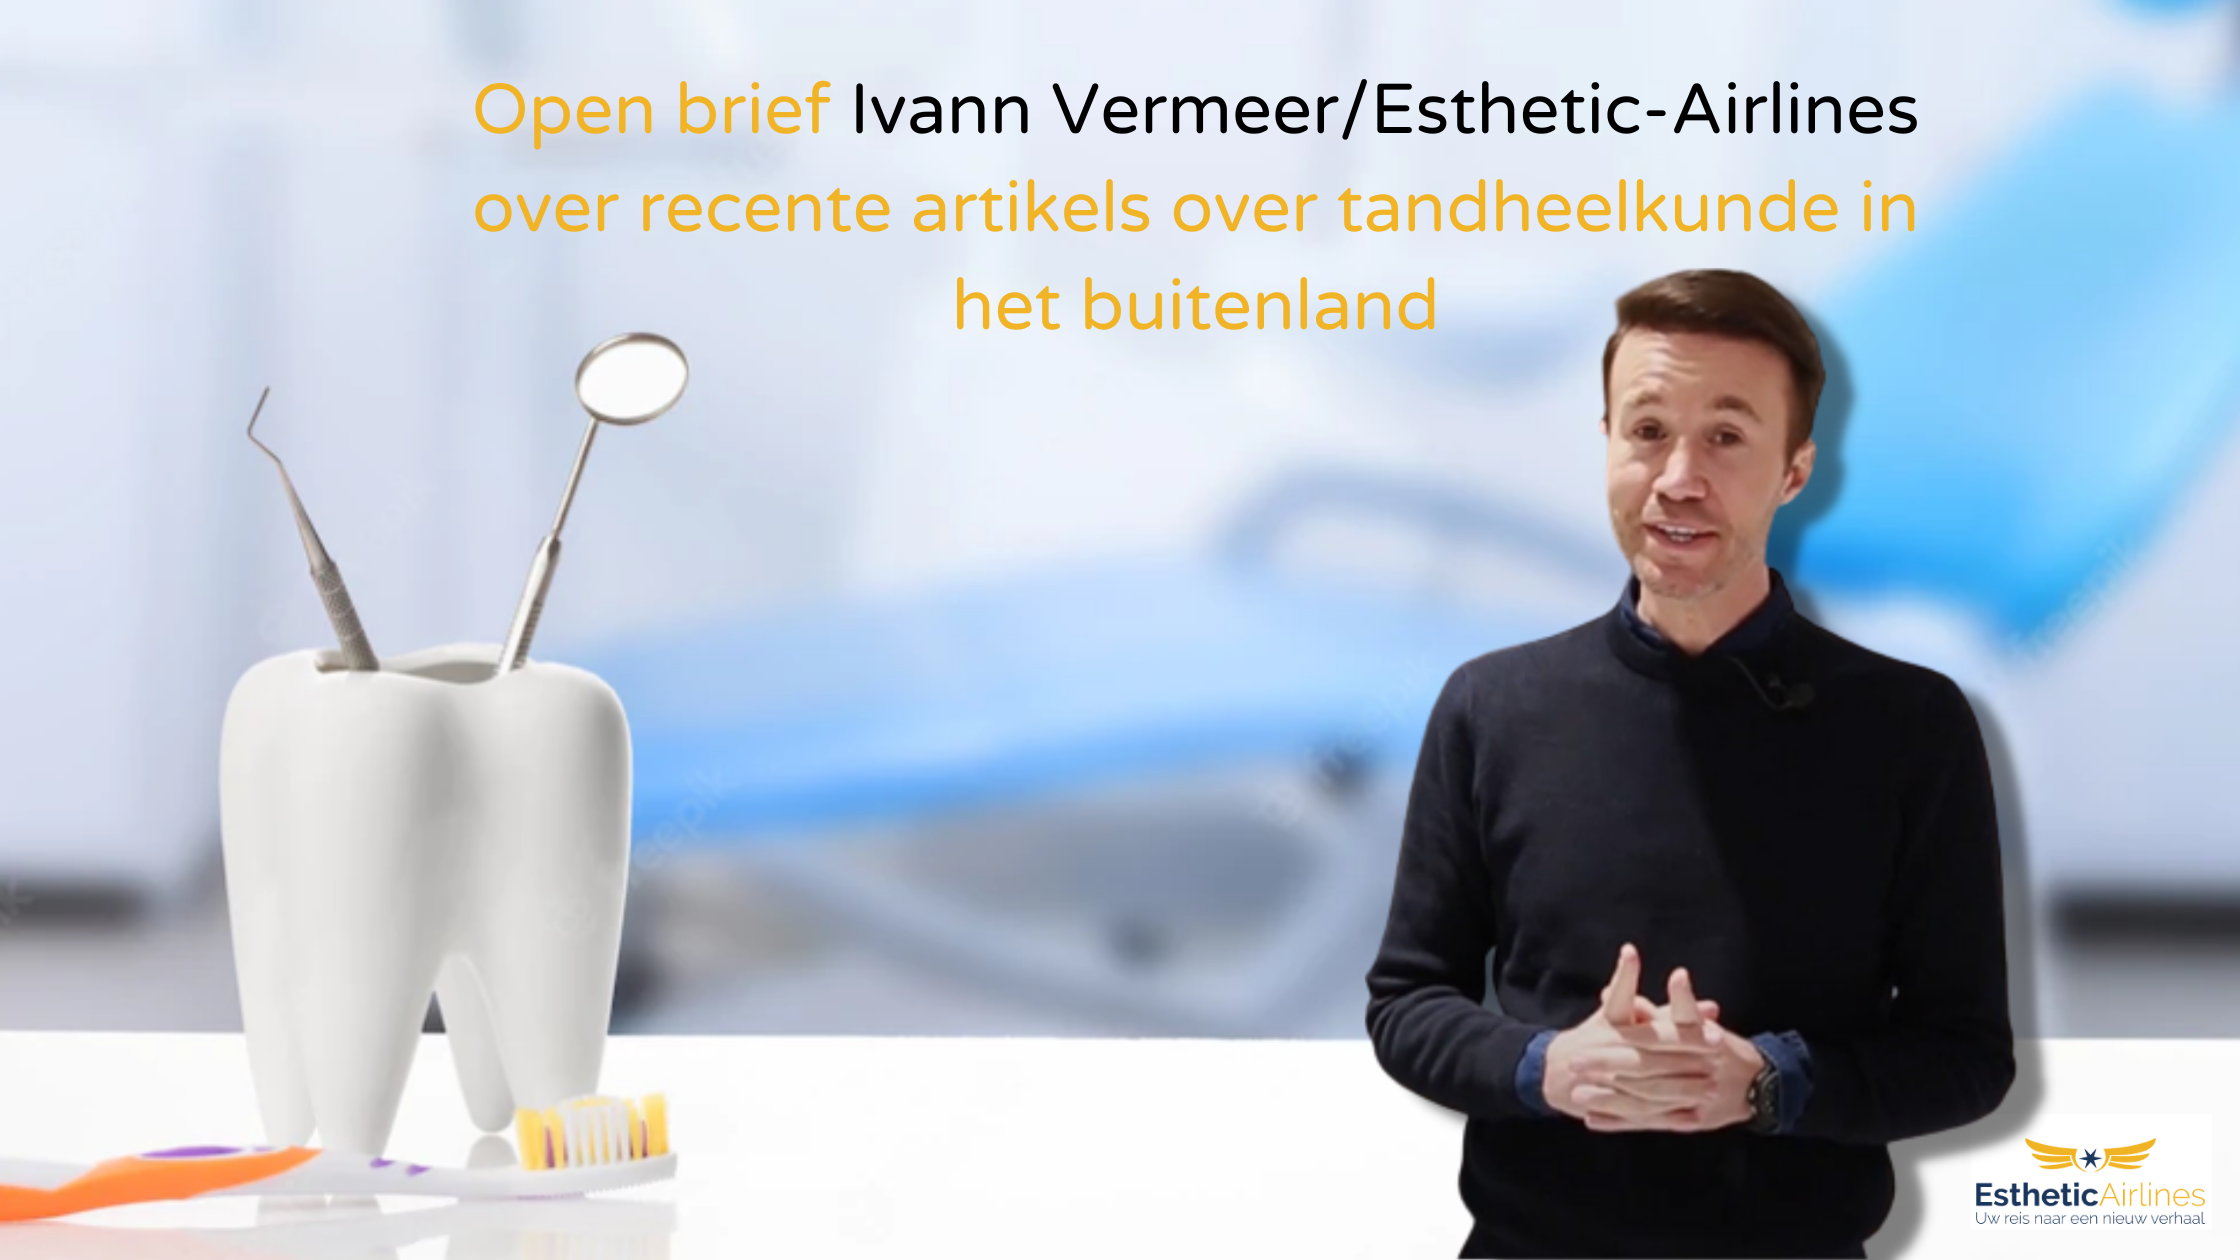 Open brief Ivann Vermeer/Esthetic-Airlines over recente artikels over tandheelkunde in het buitenland